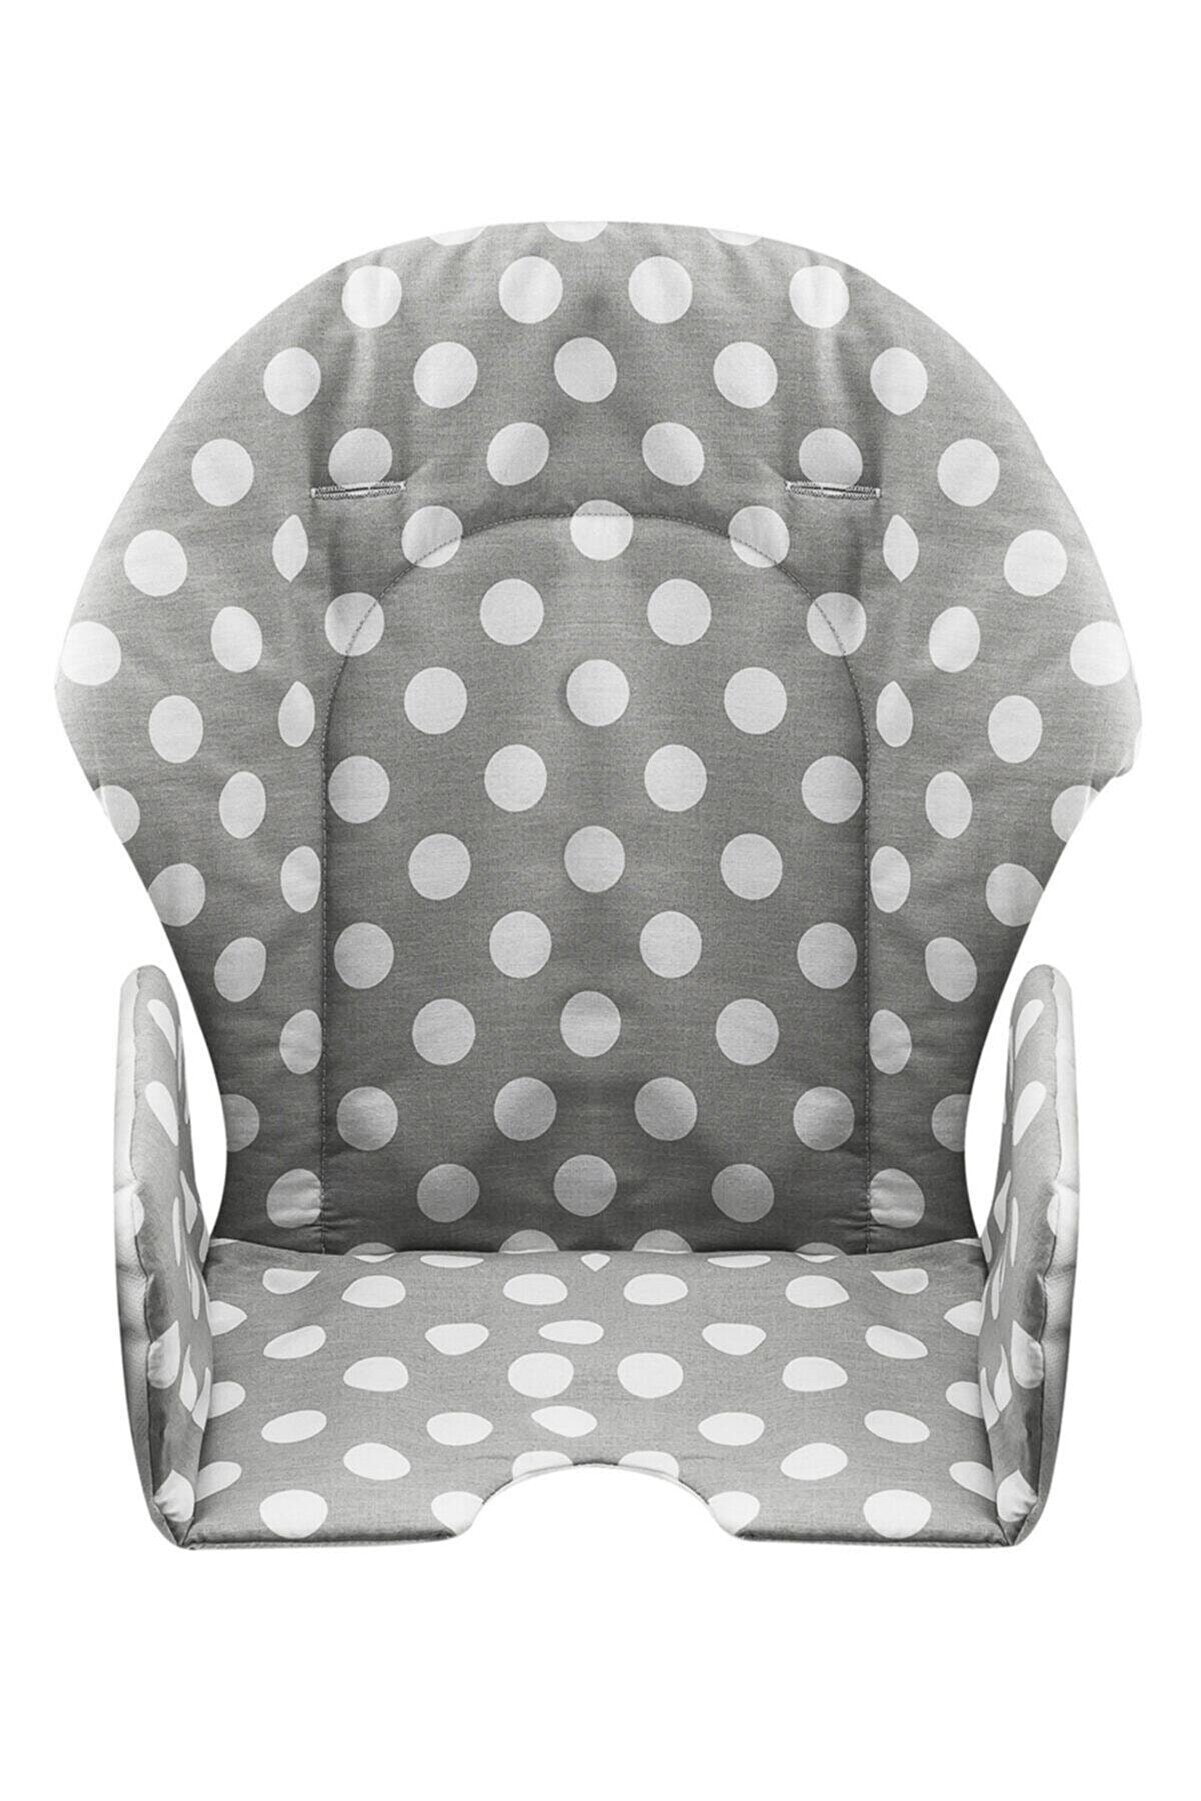 Moje Bebek Desenli Mama Sandalyesi Kılıfı Mj204